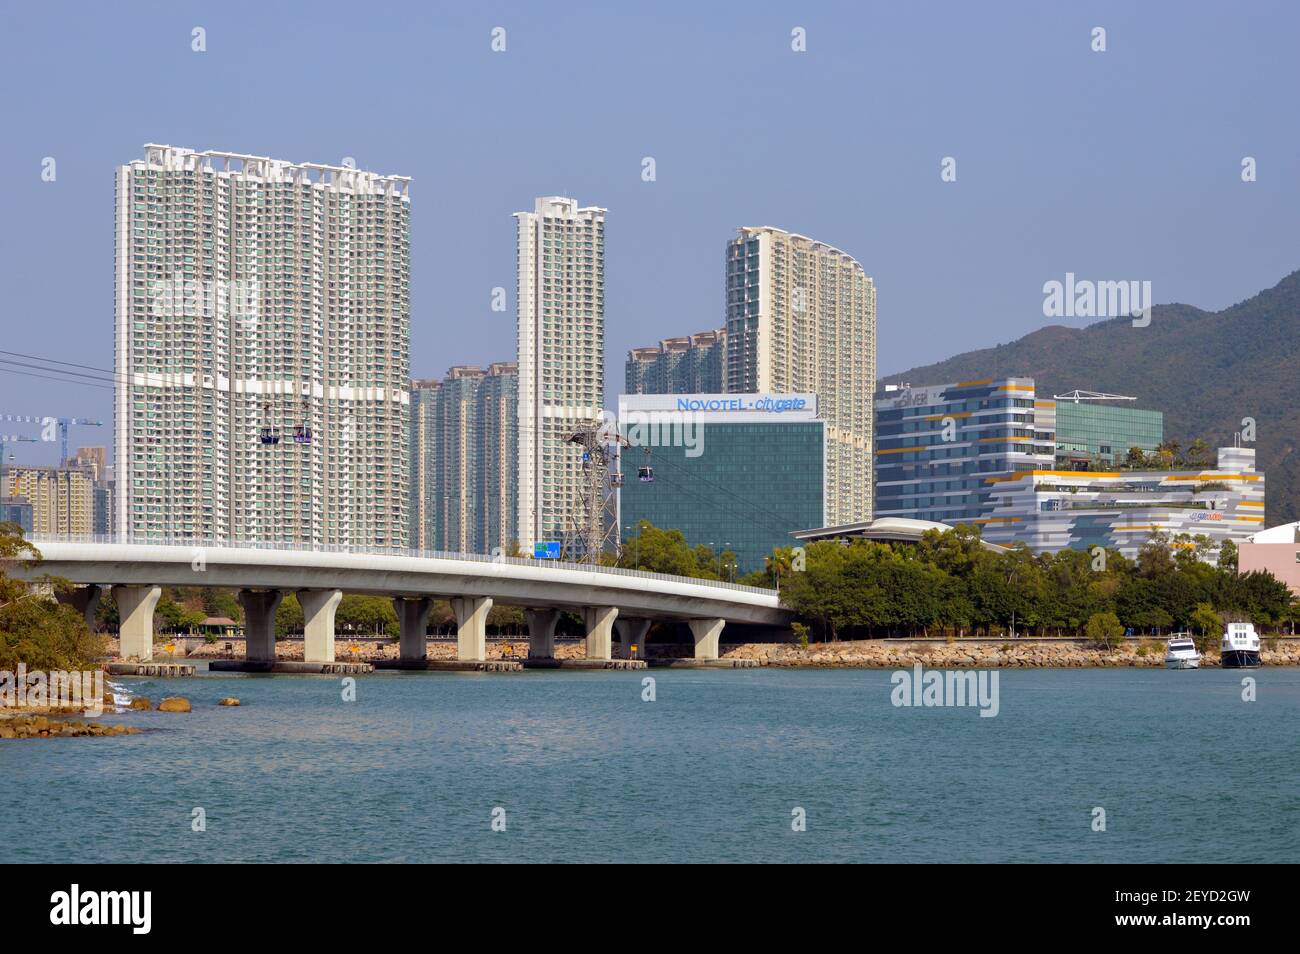 Vue sur la nouvelle ville de Tung Chung sur l'île de Lantau, Hong Kong avec Novotel Citygate, Coastal Skyline et le pont Chek Lap Kok South Road (赤鱲角南路) Banque D'Images